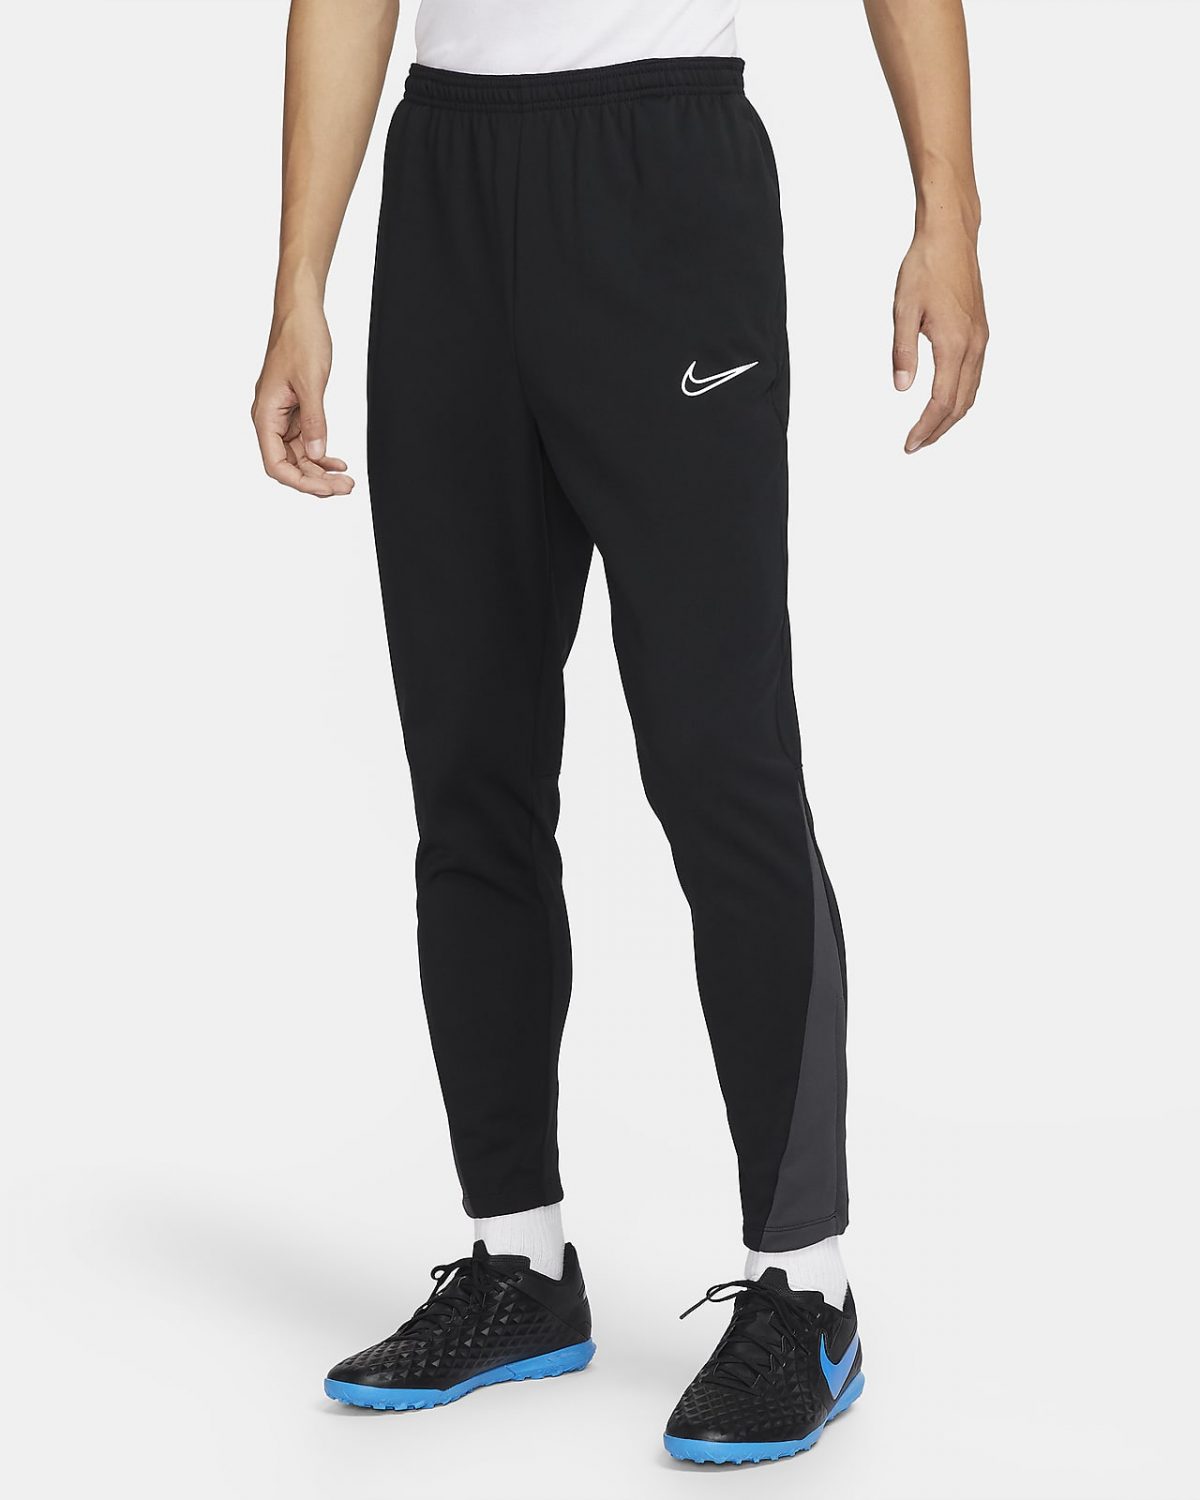 Мужские брюки Nike Academy Warrior фото